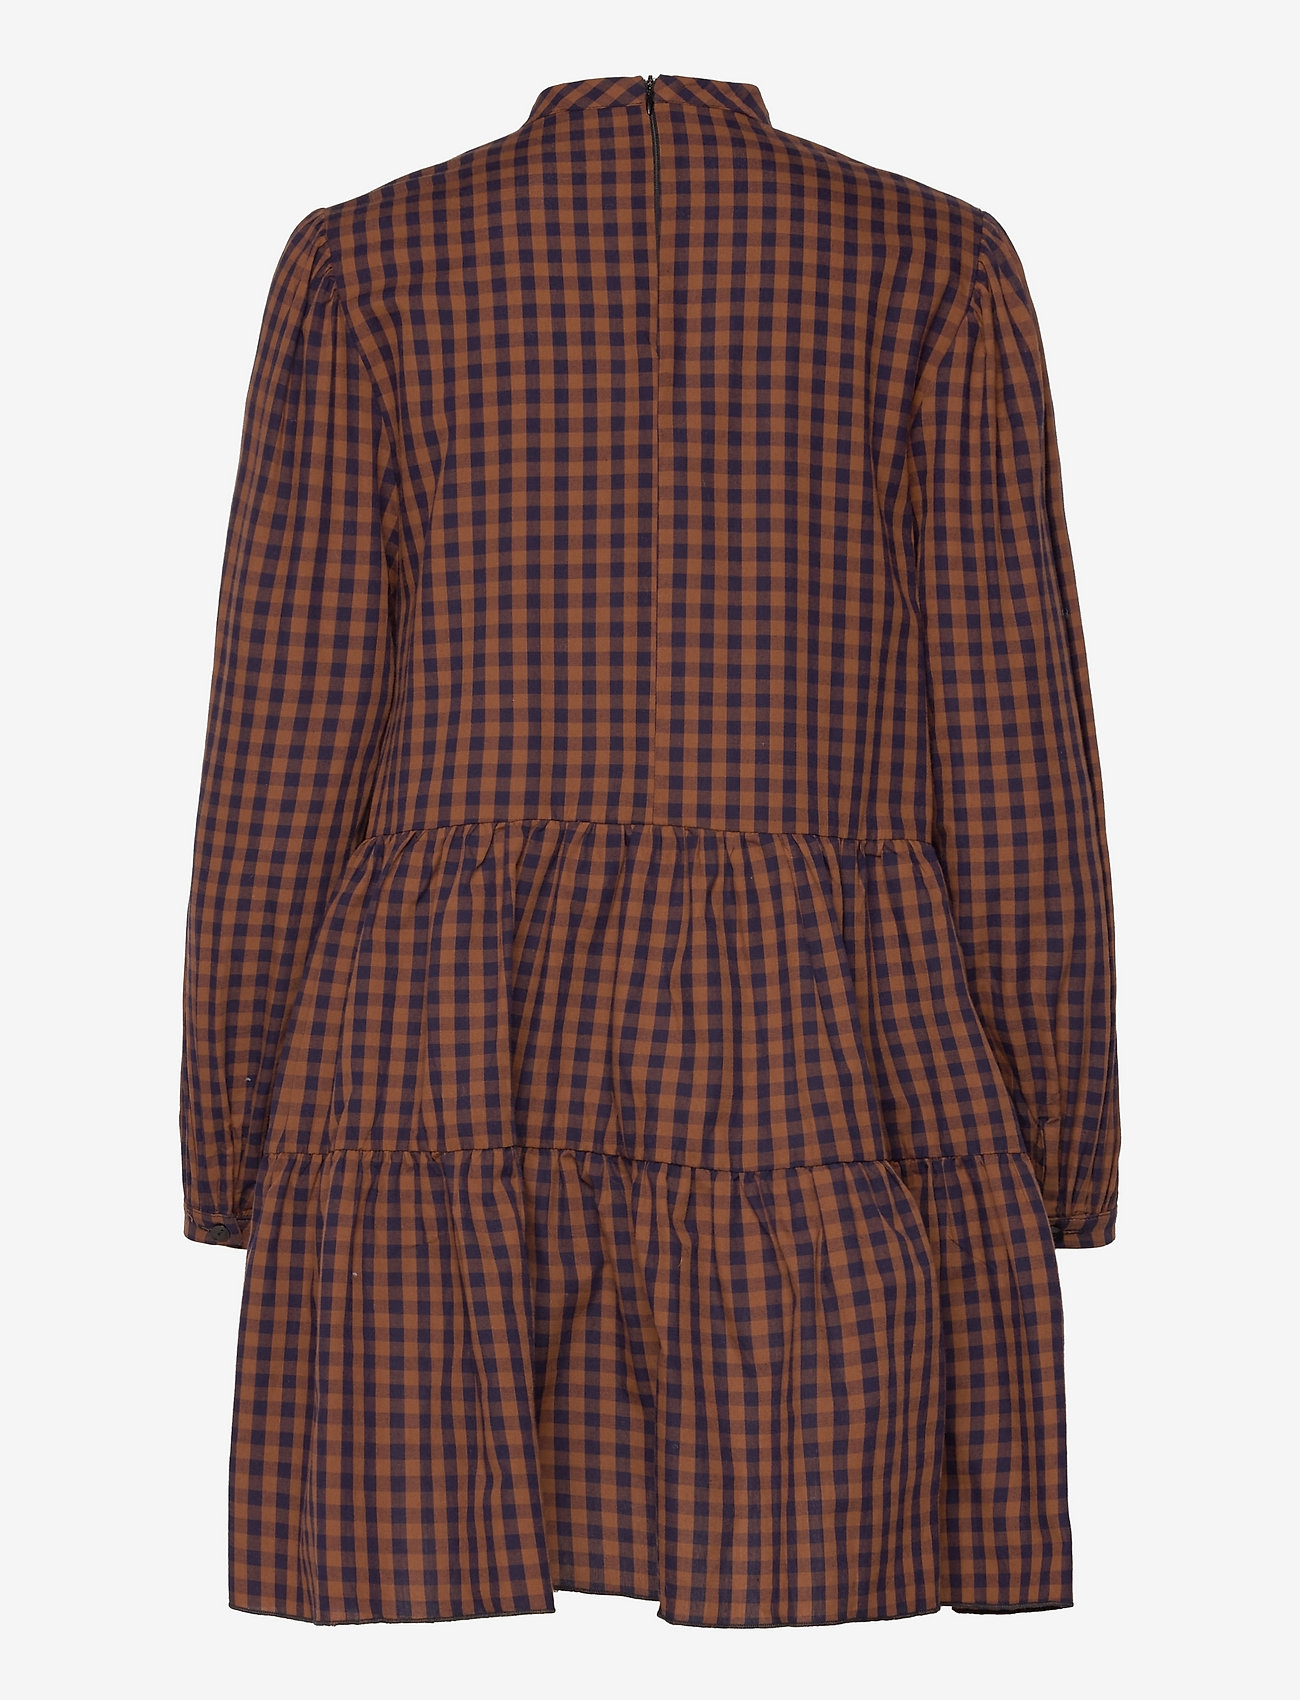 Noella - Tif Dress Cotton Poplin - korte kjoler - terracotta checks - 1